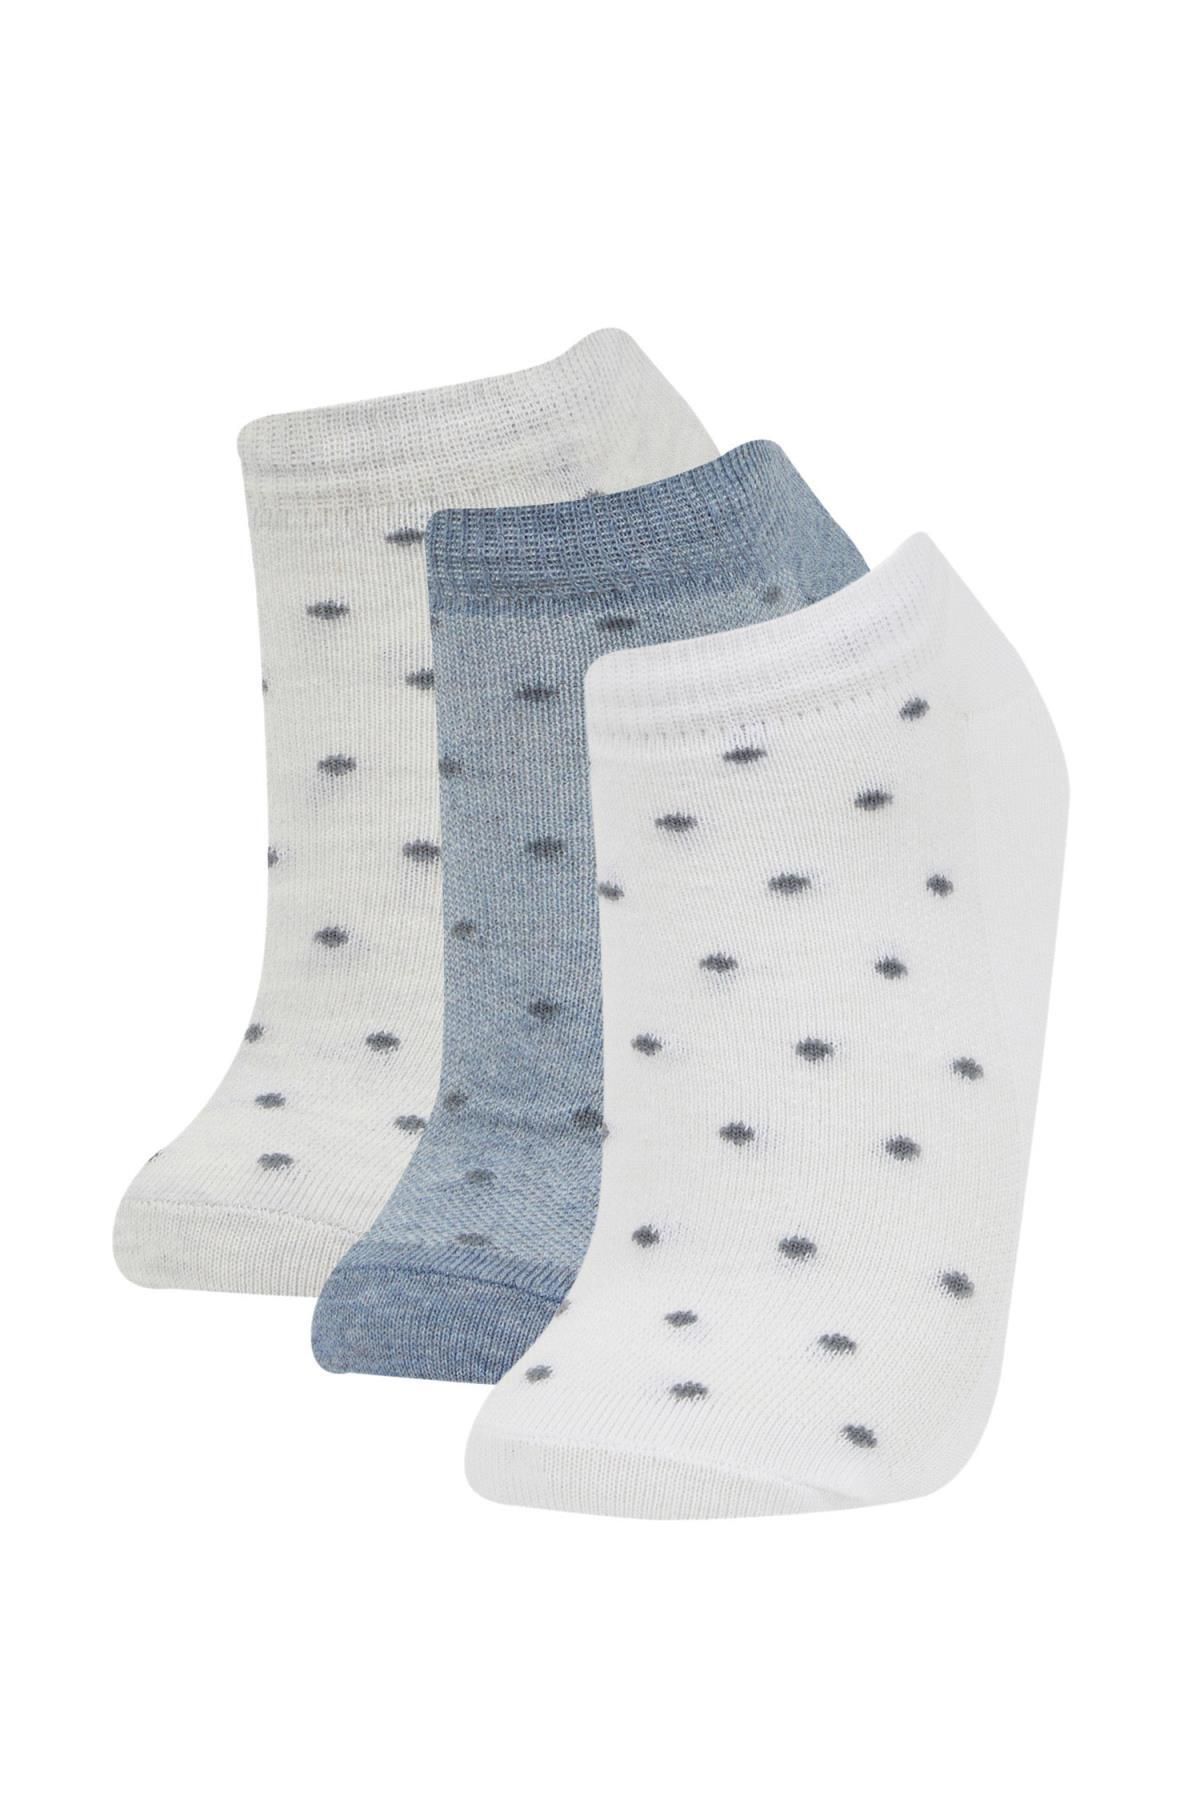 Defacto Kadın 3'lü Pamuklu Patik Çorap B6037axns